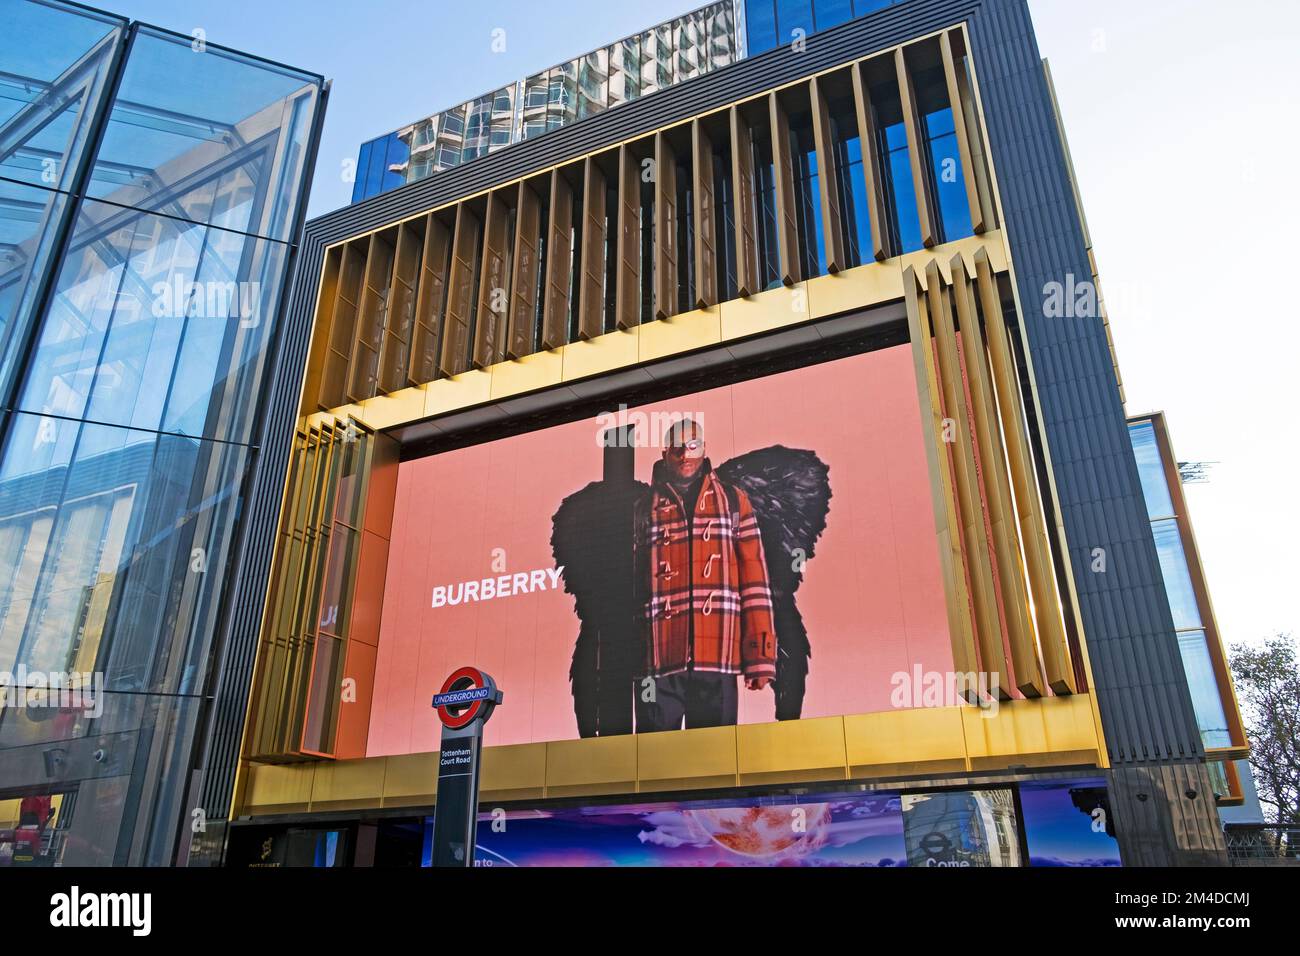 Burberry abbigliamento pubblicità elettronica annuncio display pubblicità sulla facciata esterna della Now Building Charing Cross Road Soho Londra UK KATHY DEWITT Foto Stock